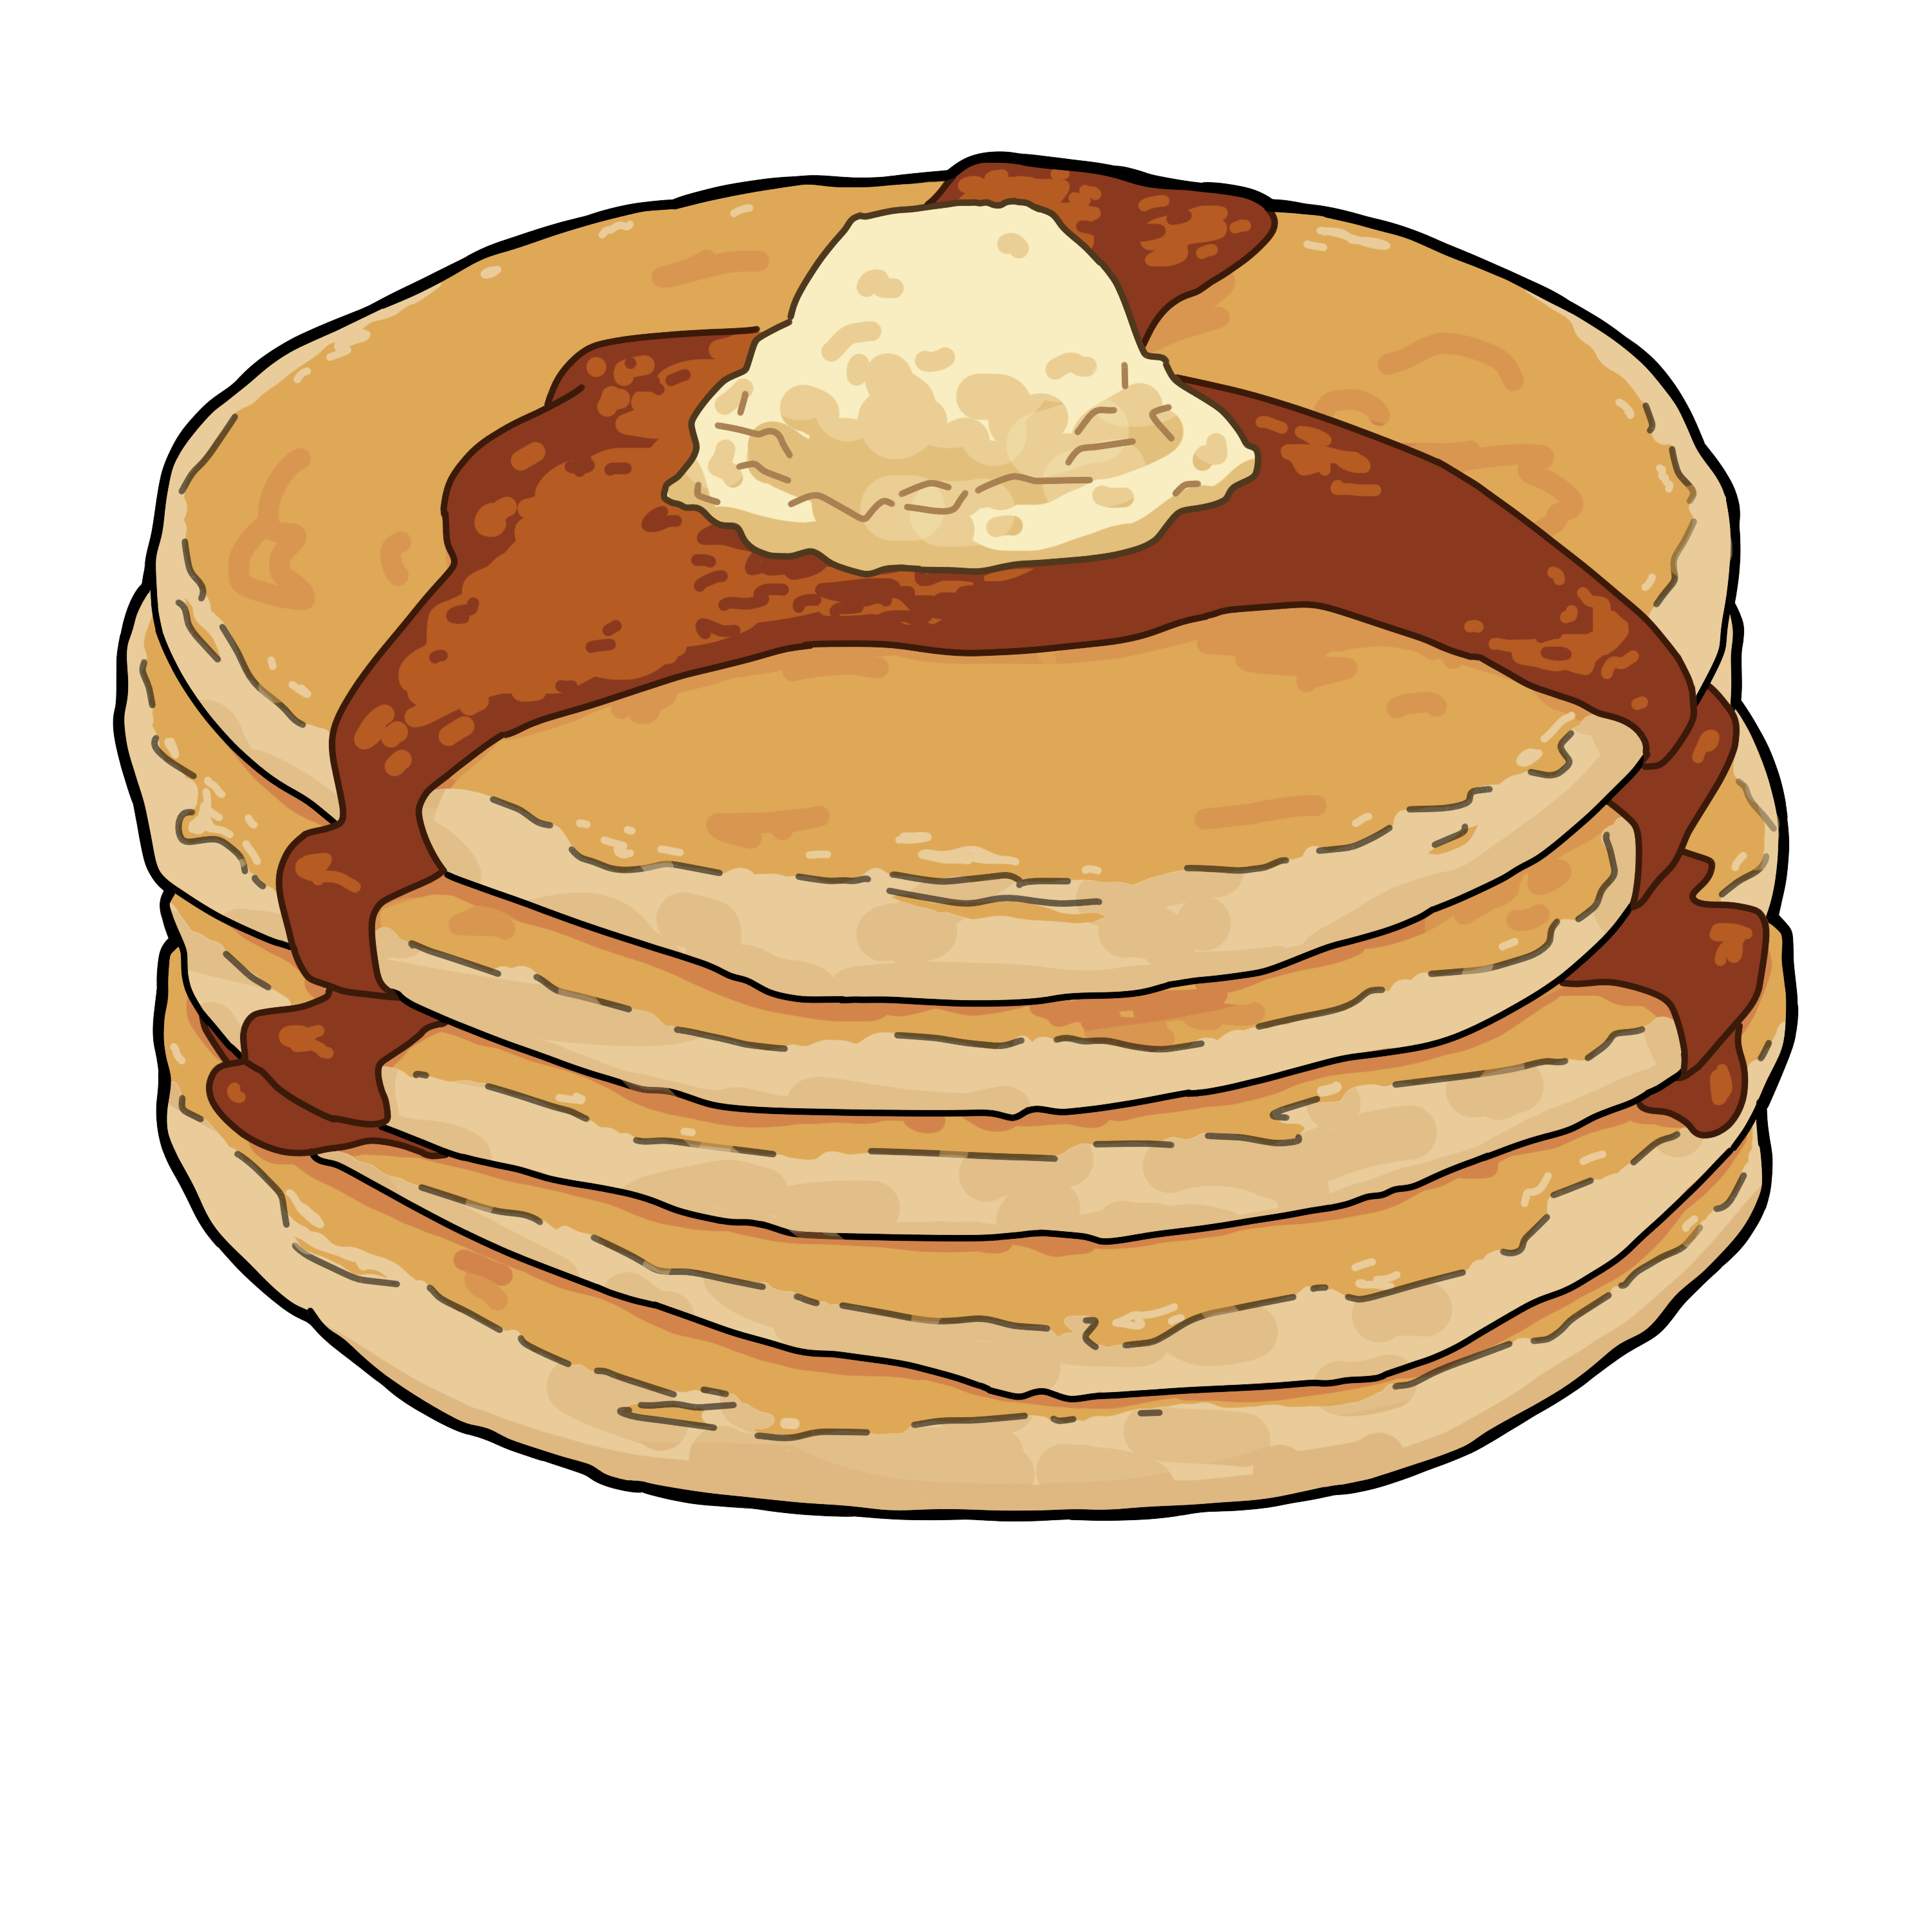 Ipad pancakes drawing my. Pancake clipart baking